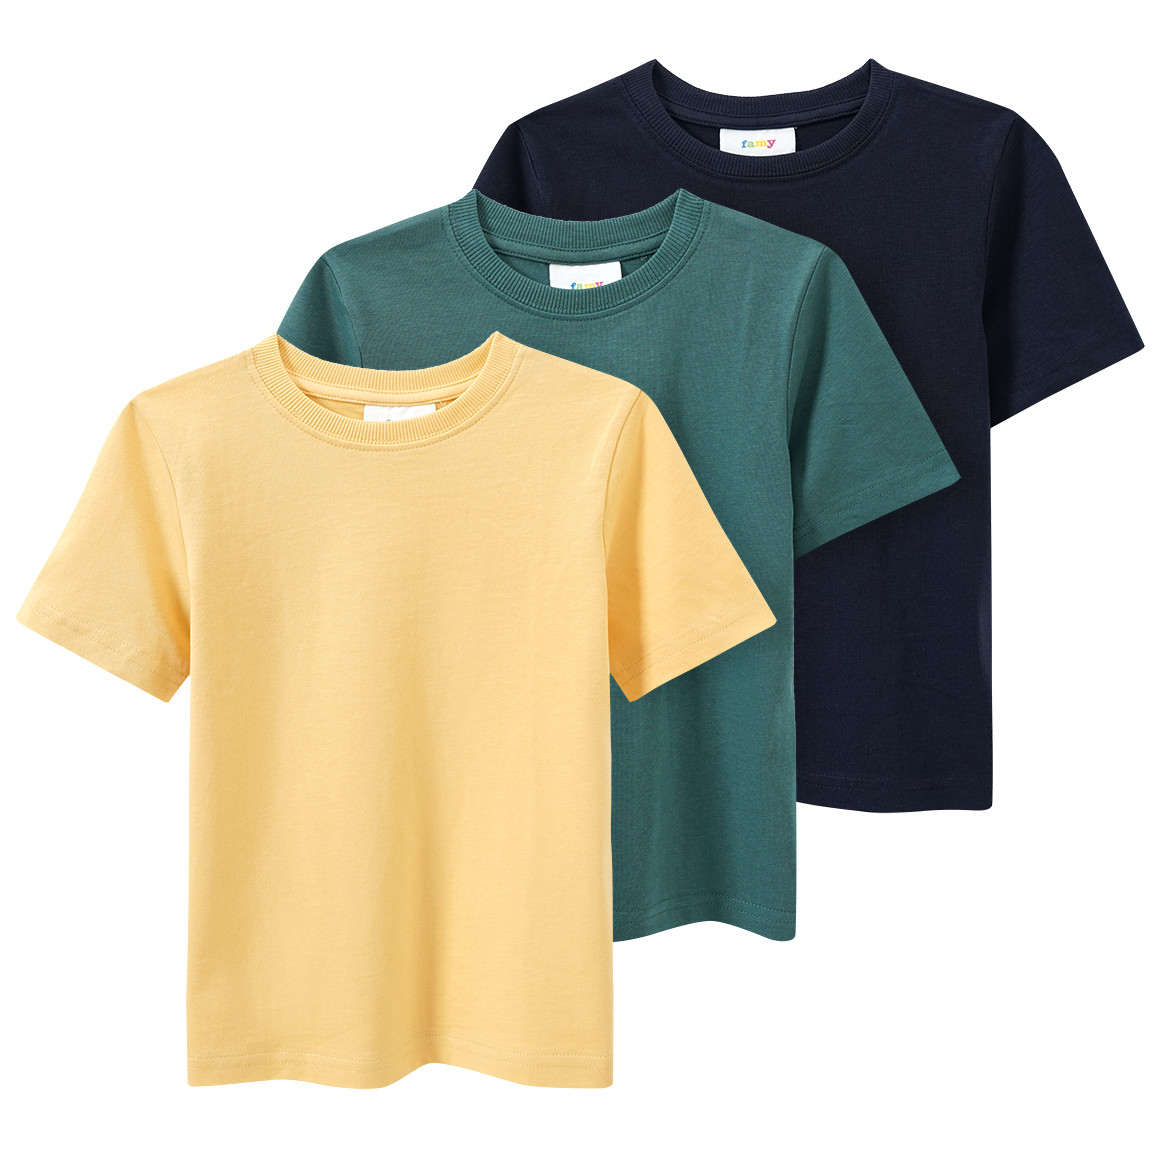 3 Jungen T-Shirts unifarben von Topolino